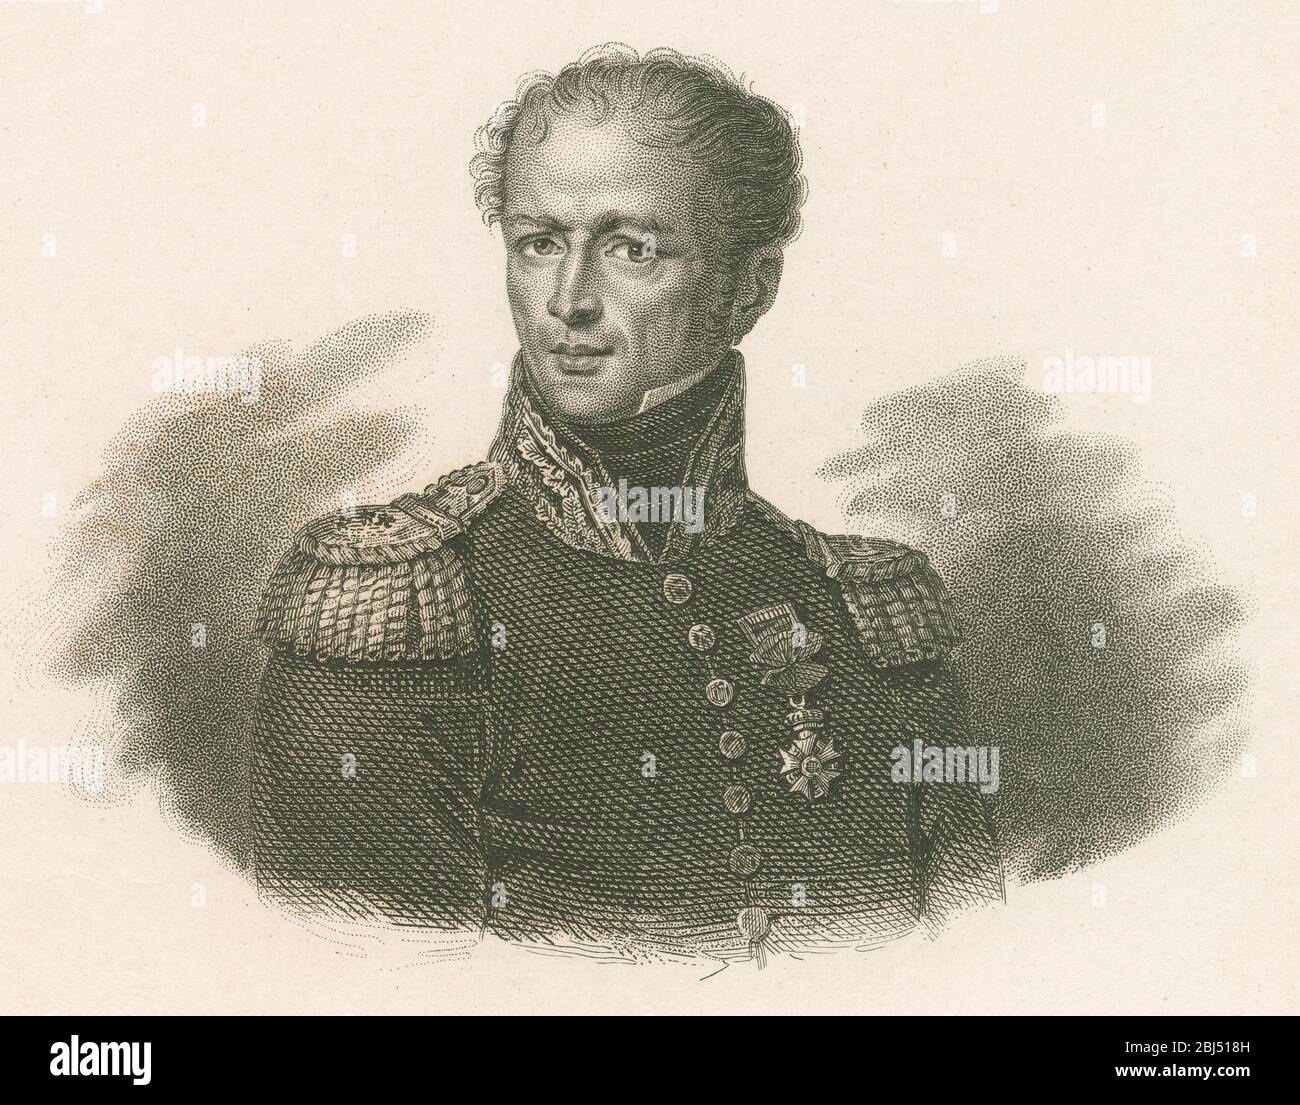 Gravure ancienne, Antoine Drouot. Le général Antoine Drouot, Comte Drout (1774-1847) était un officier français qui combattait dans les guerres révolutionnaires et napoléoniennes. SOURCE: GRAVURE ORIGINALE Banque D'Images